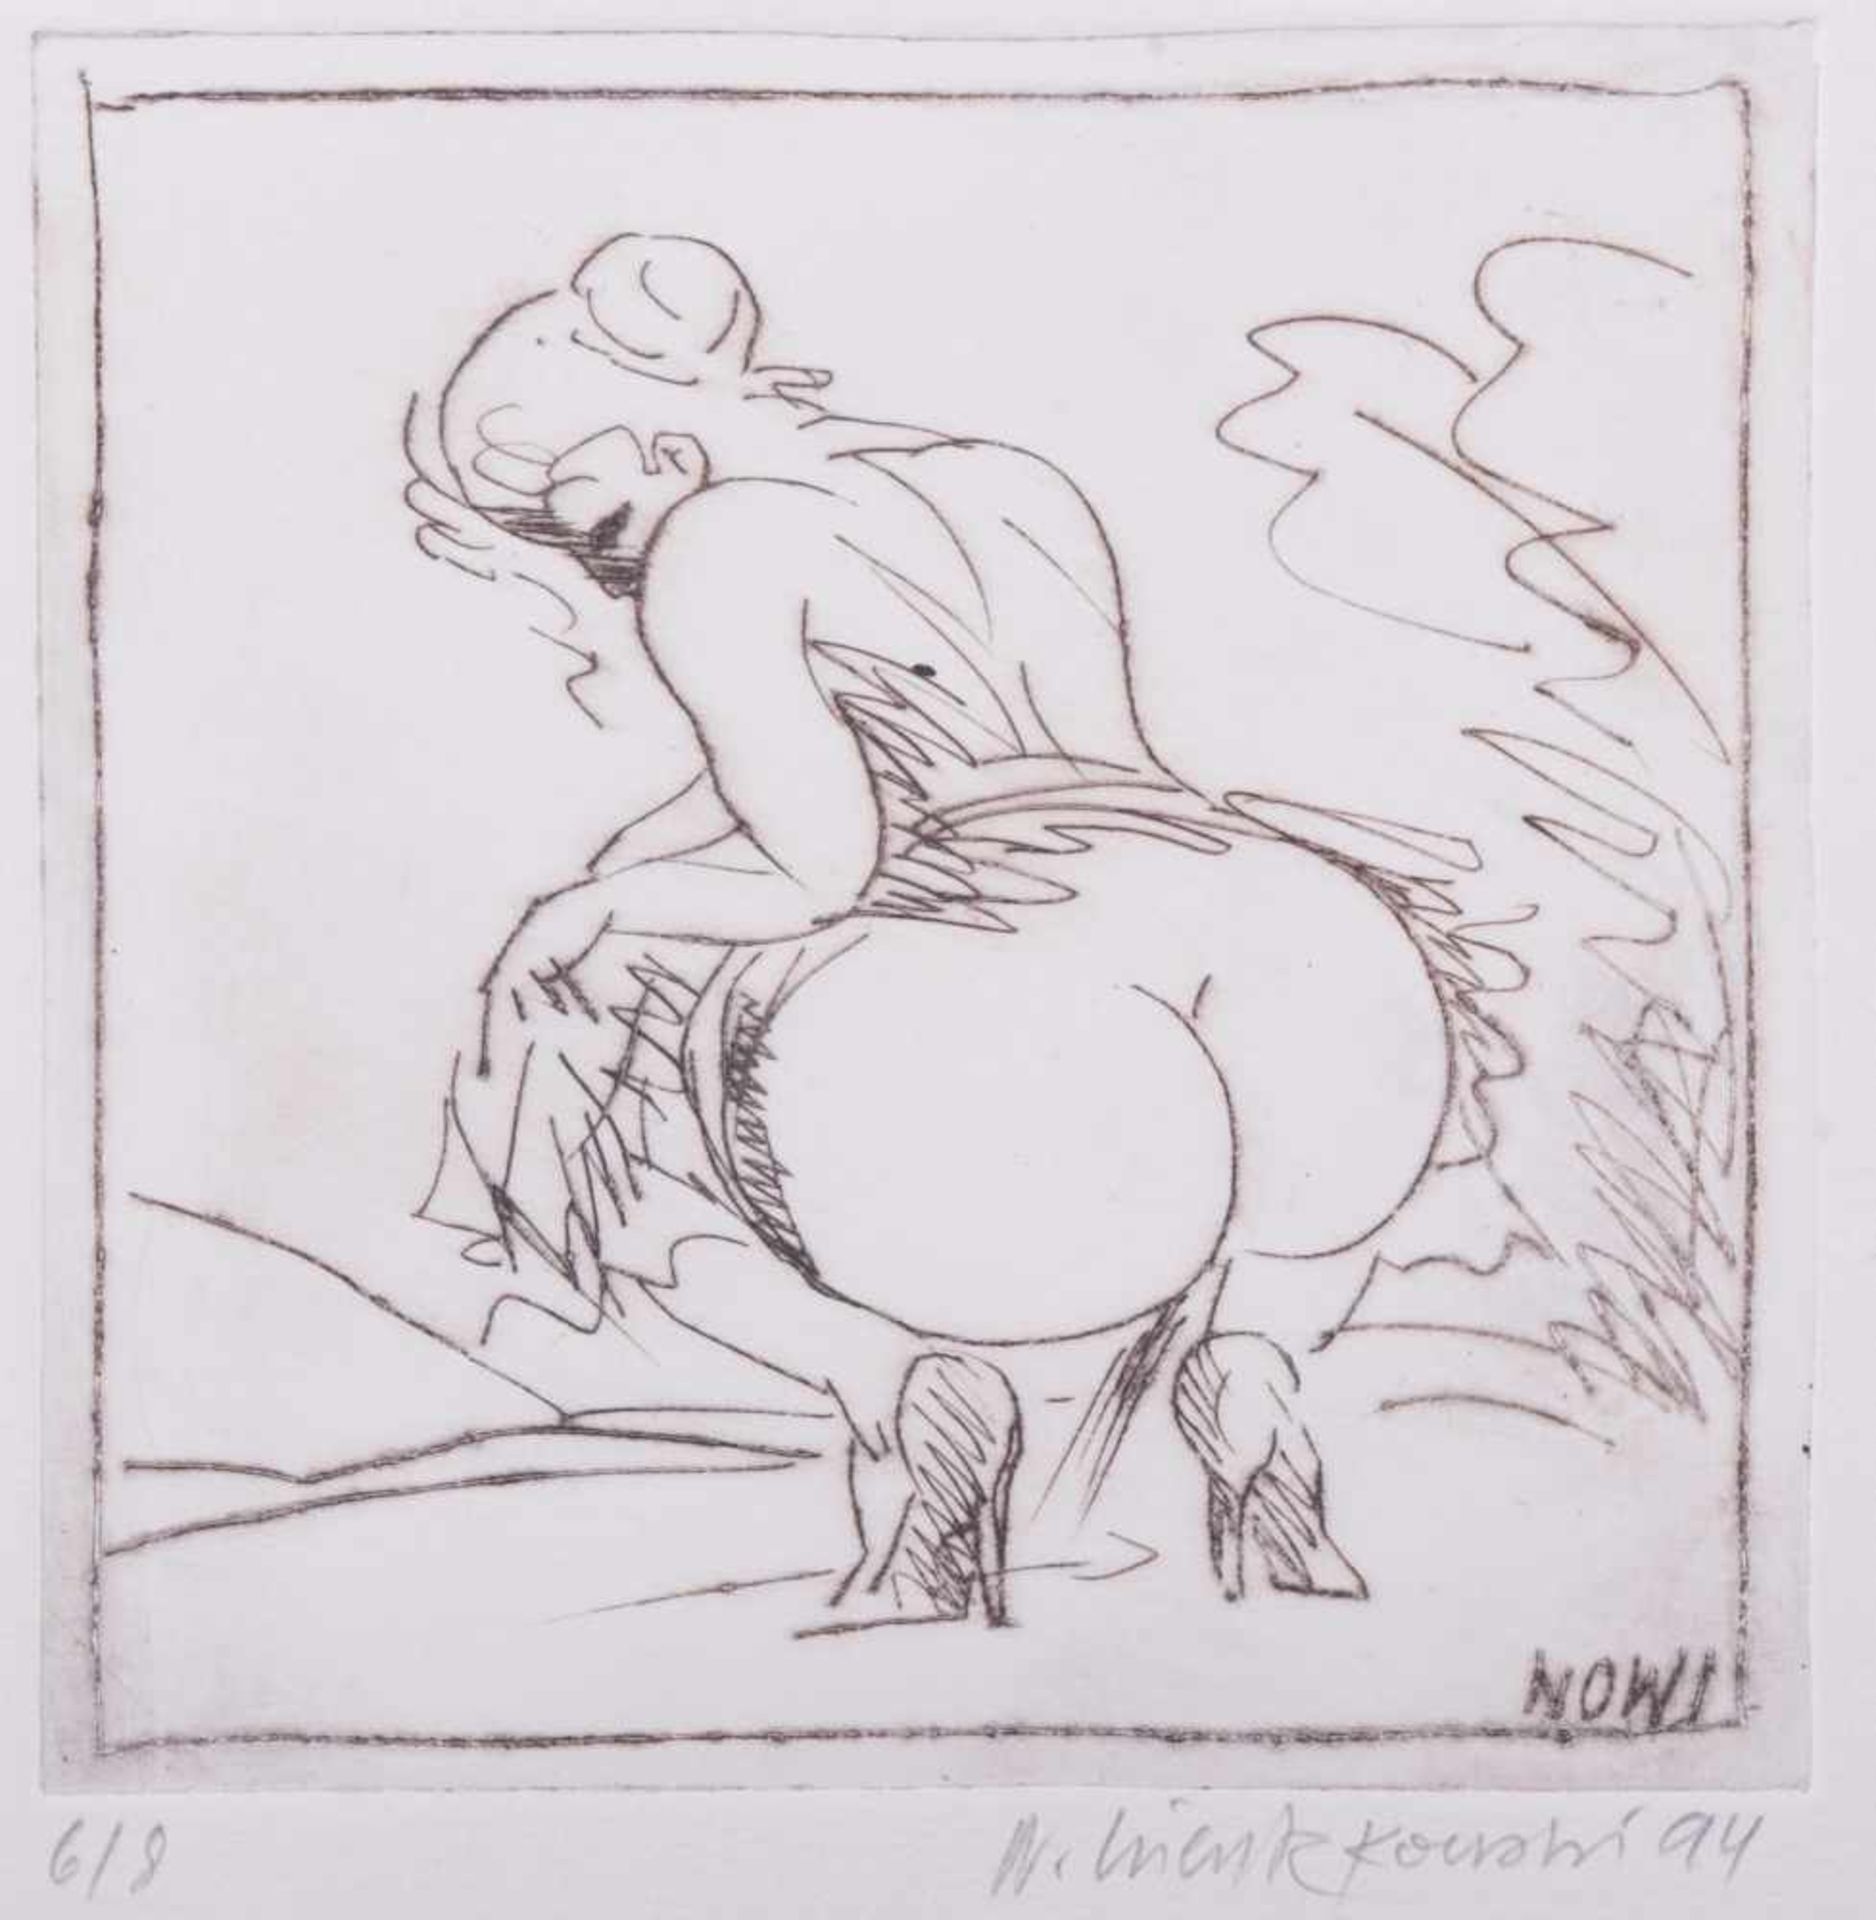 Norbert WIENTZKOWSKI (1940-2006) "erotische Darstellung" Grafik-Multiple, Radierung, 12 cm x 12 cm